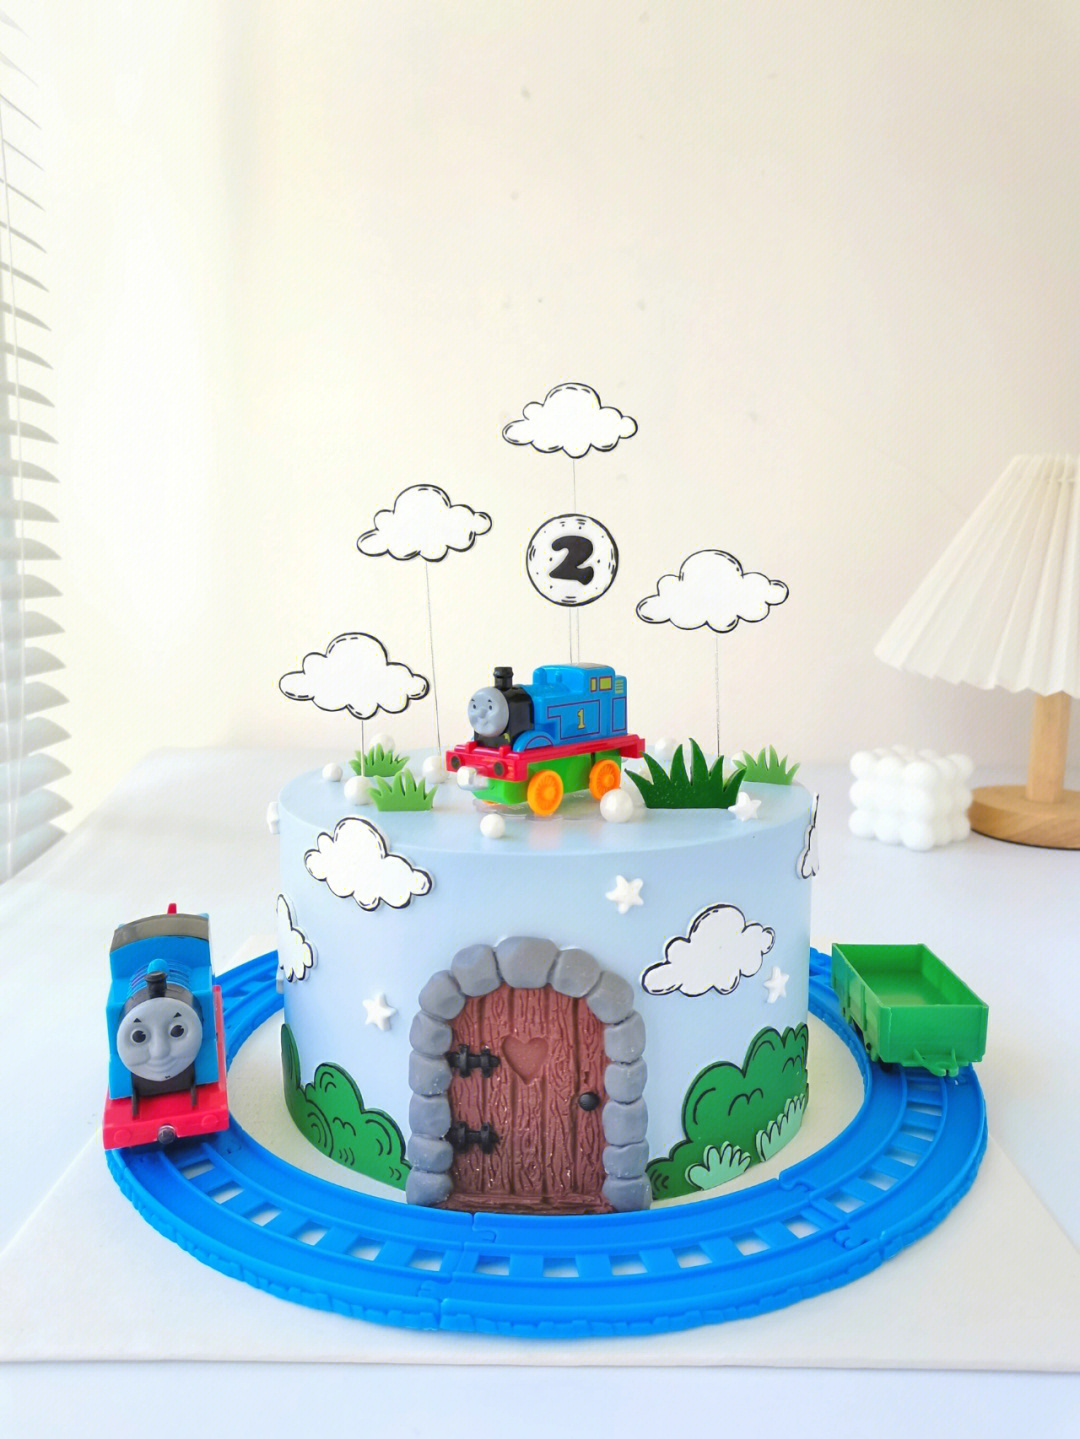 托马斯小火车生日蛋糕